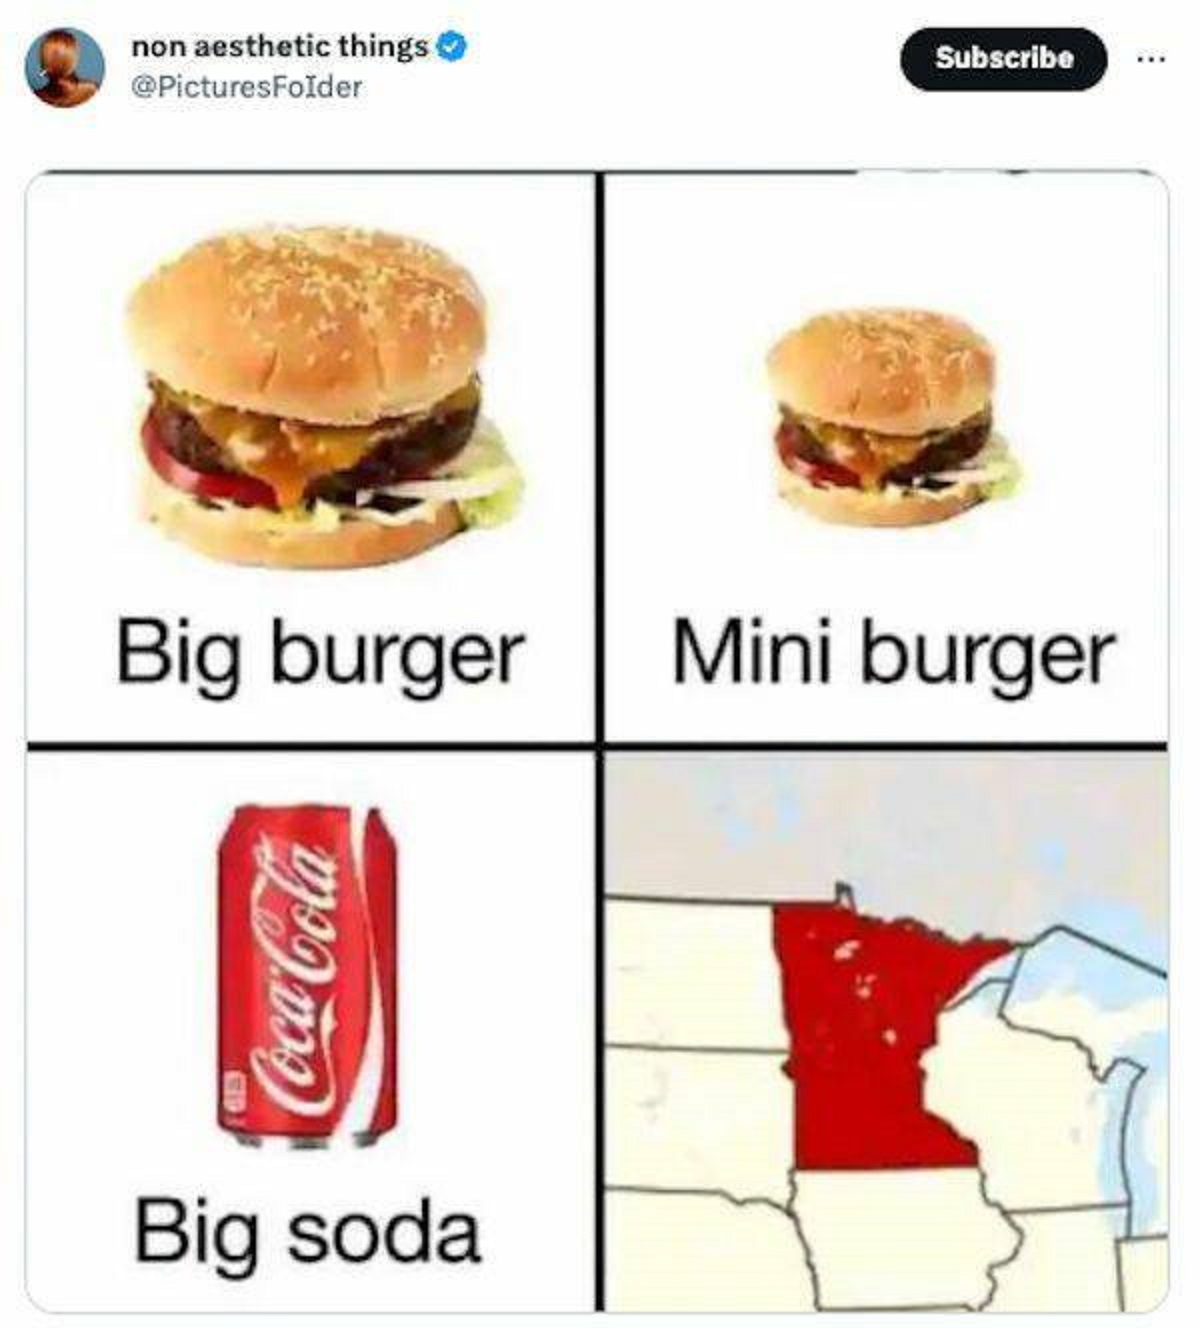 funny tweets - big burger mini burger big soda - non aesthetic things Big burger CocaCola Big soda Subscribe Mini burger A